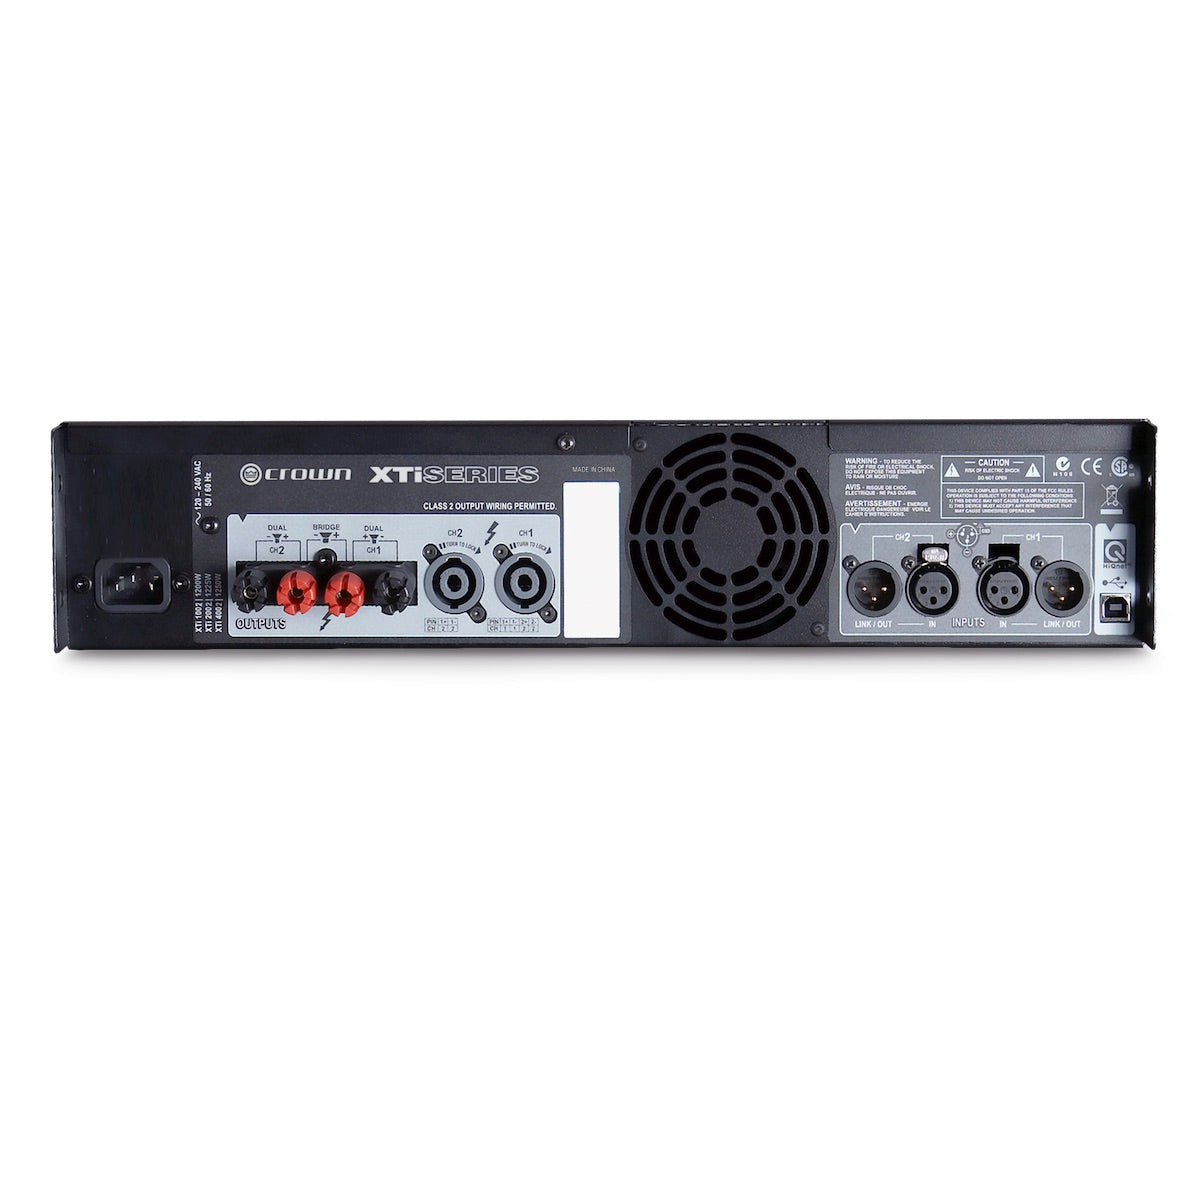 Crown XTi 4002 - Two-channel, 1200W Power Amplifier, rear